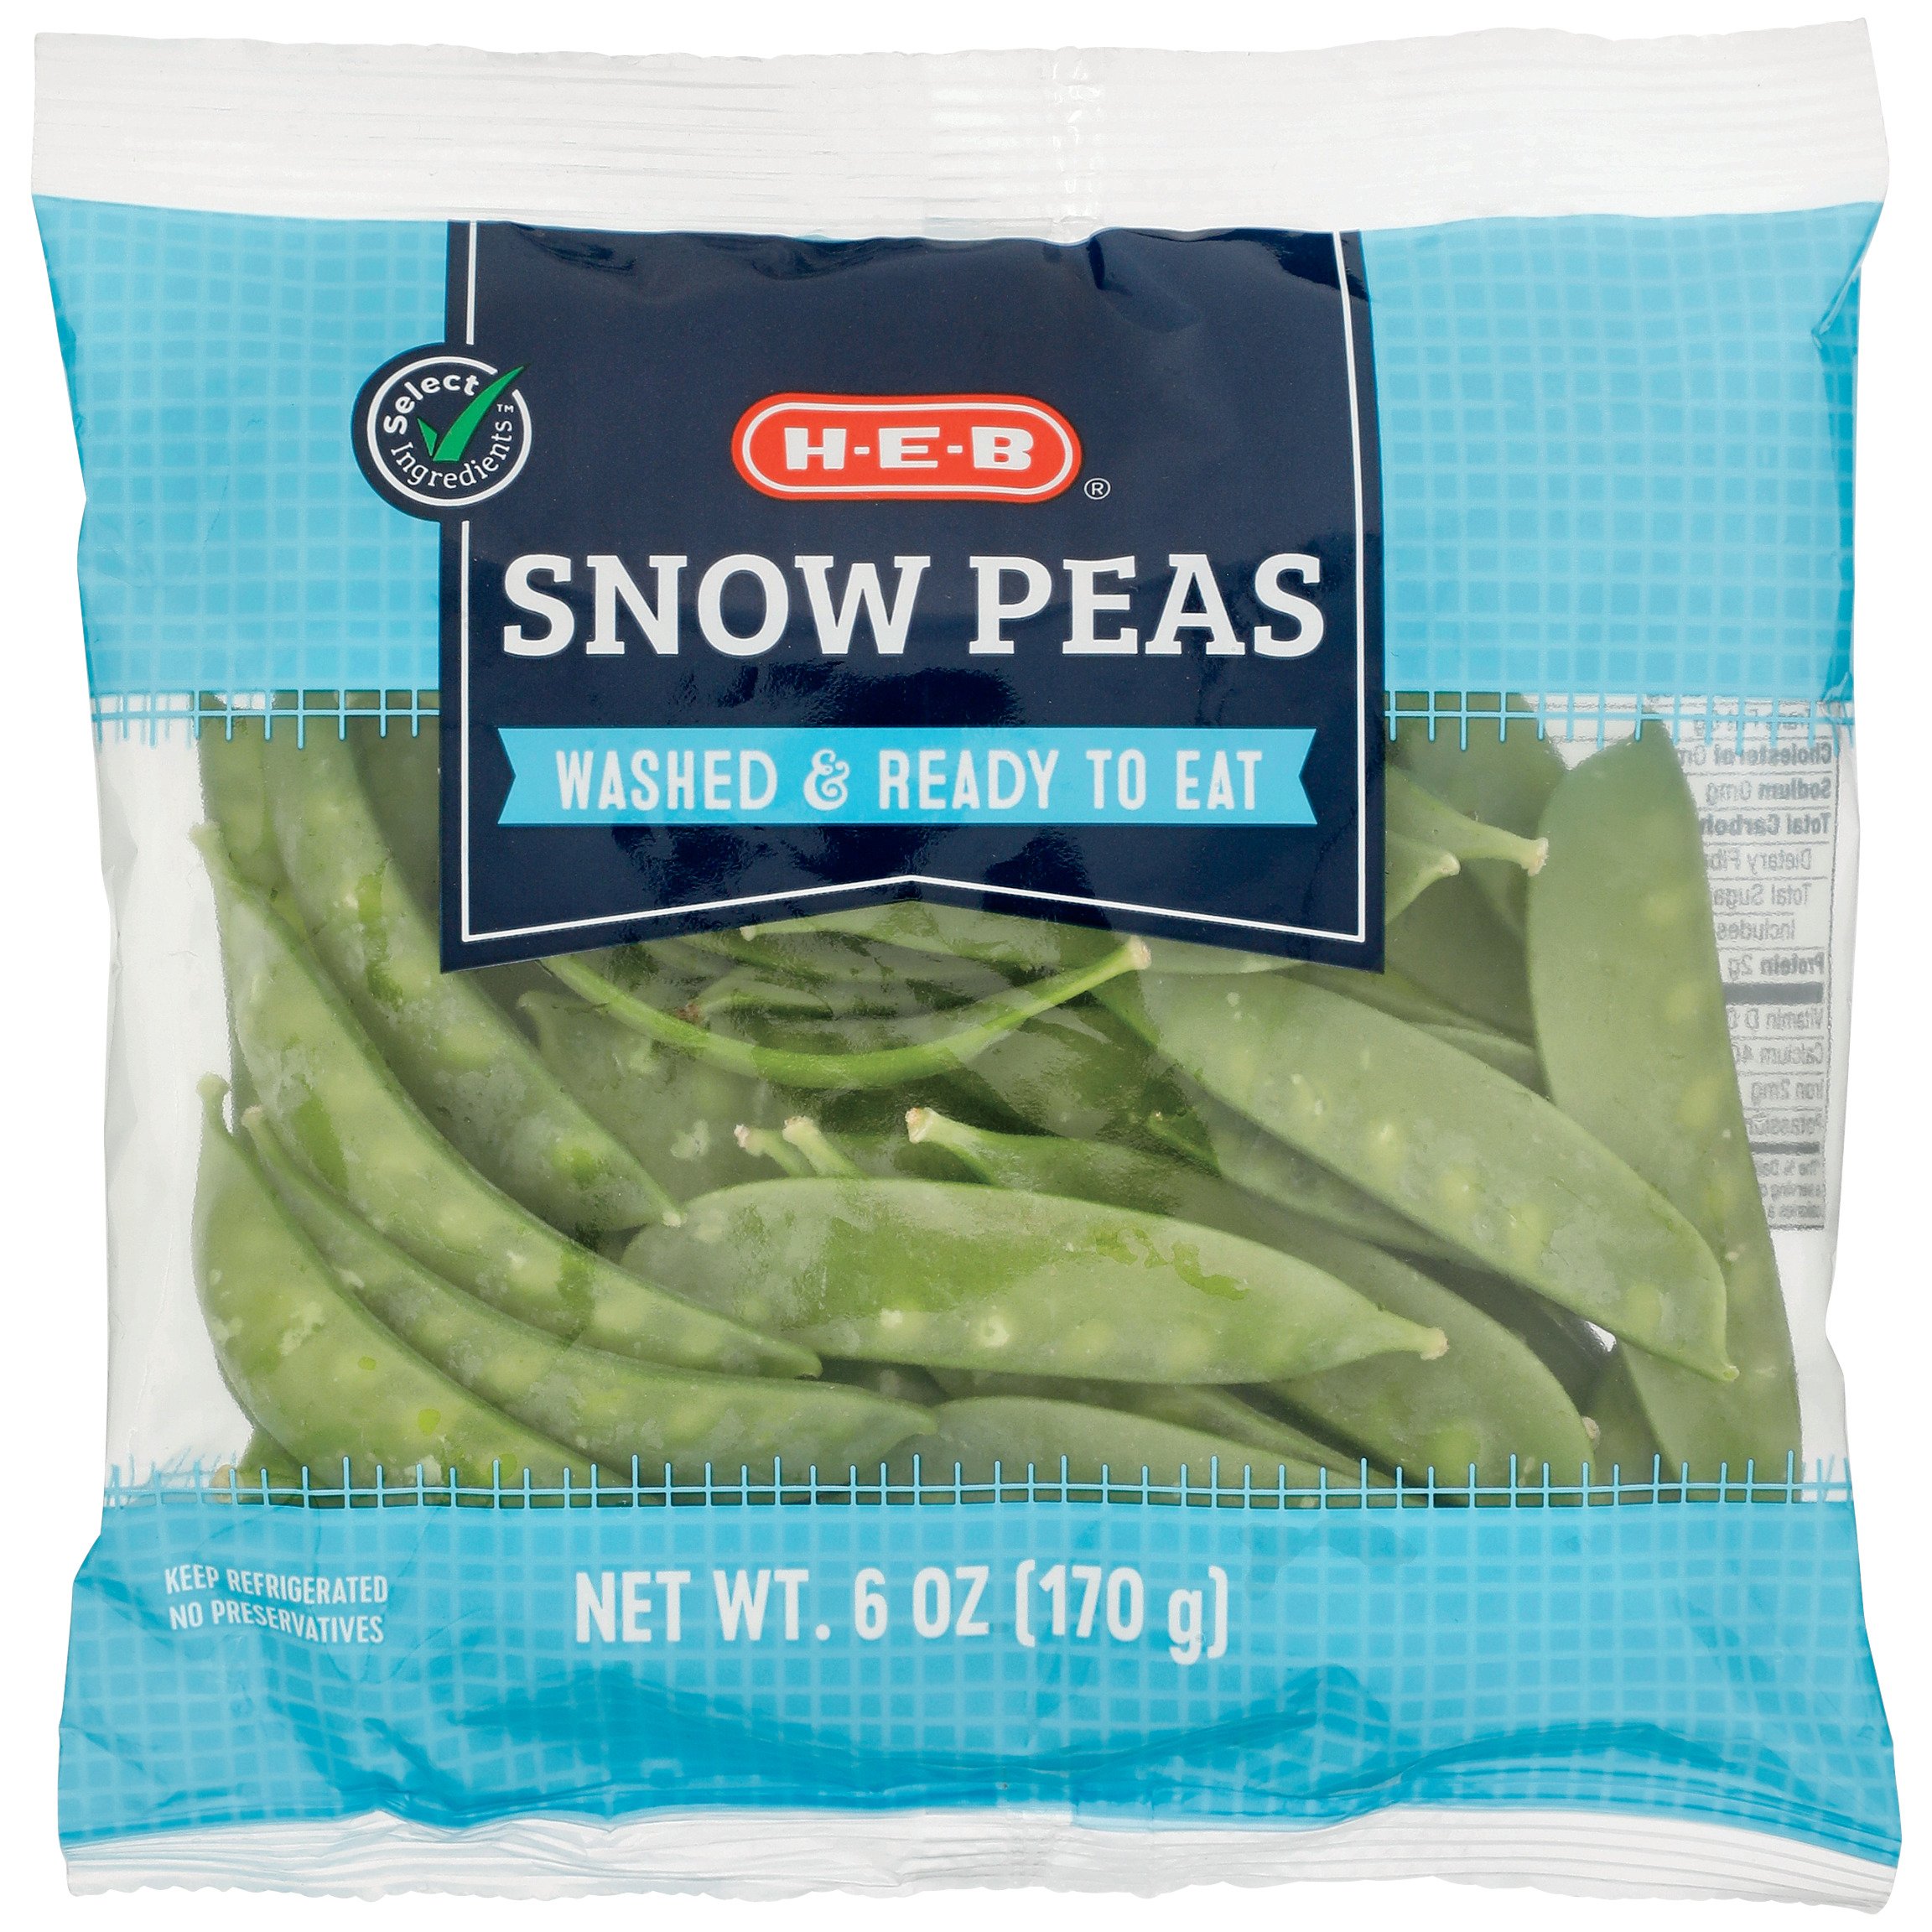 H-E-B Snow Peas - Shop Beans & Peas at H-E-B